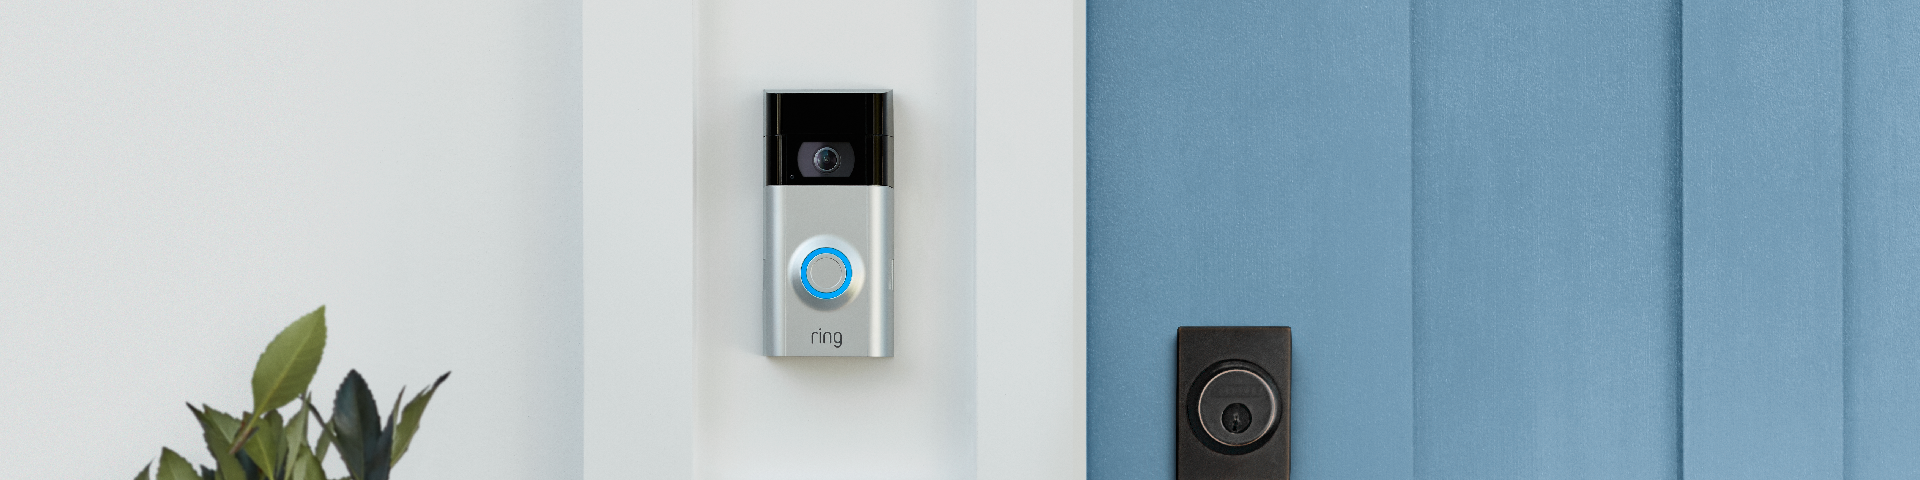 Ring Video Doorbell | Dell USA